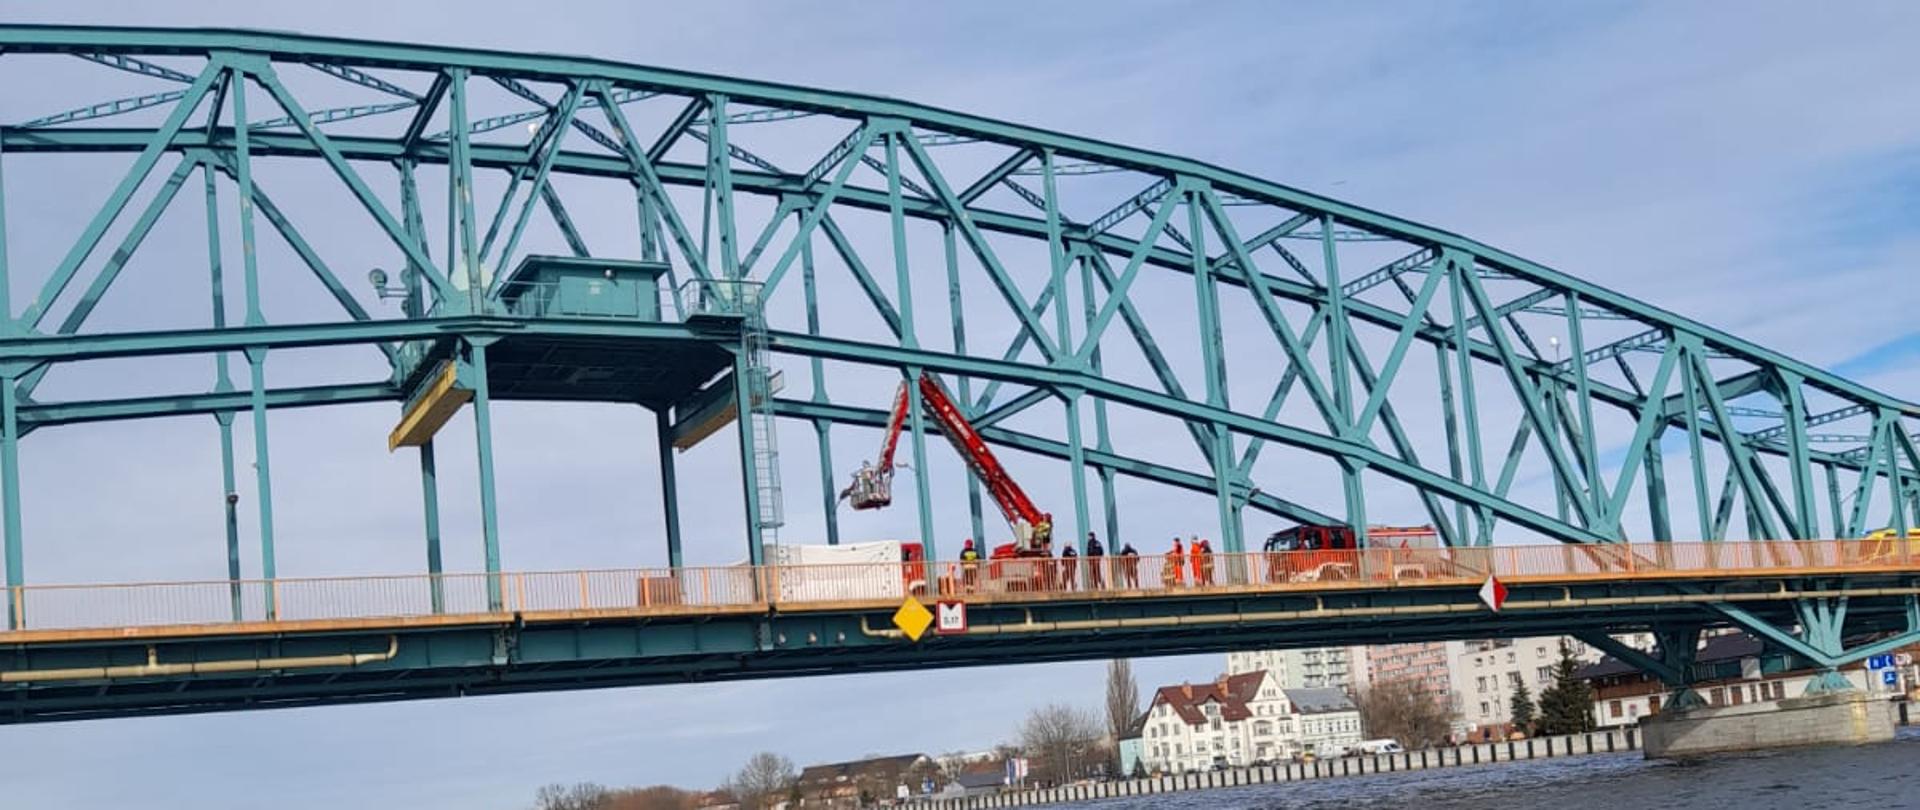 Zdjęcie przedstawia most w miejscowości Gryfino. Na moście widać rozłożony podnośnik Państwowej Straży Pożarnej. Kosz podnośnika unosi się w stronę osoby, która chce skoczyć z mostu. 